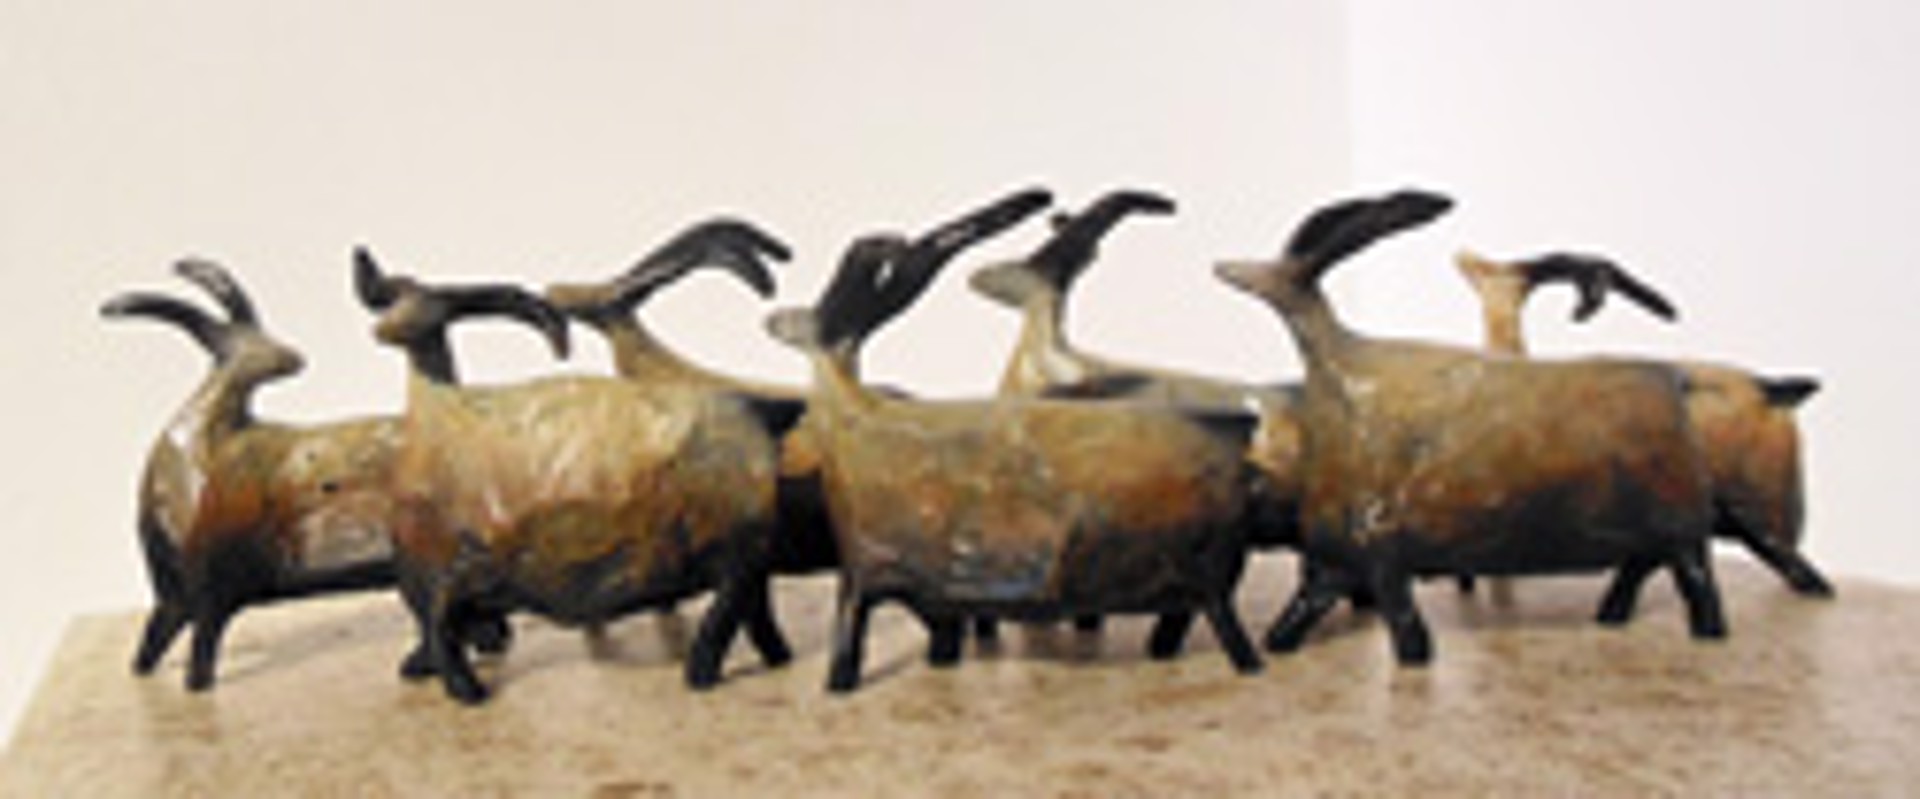 Roaming herd(white patina) 7 sheep set by Jill Shwaiko